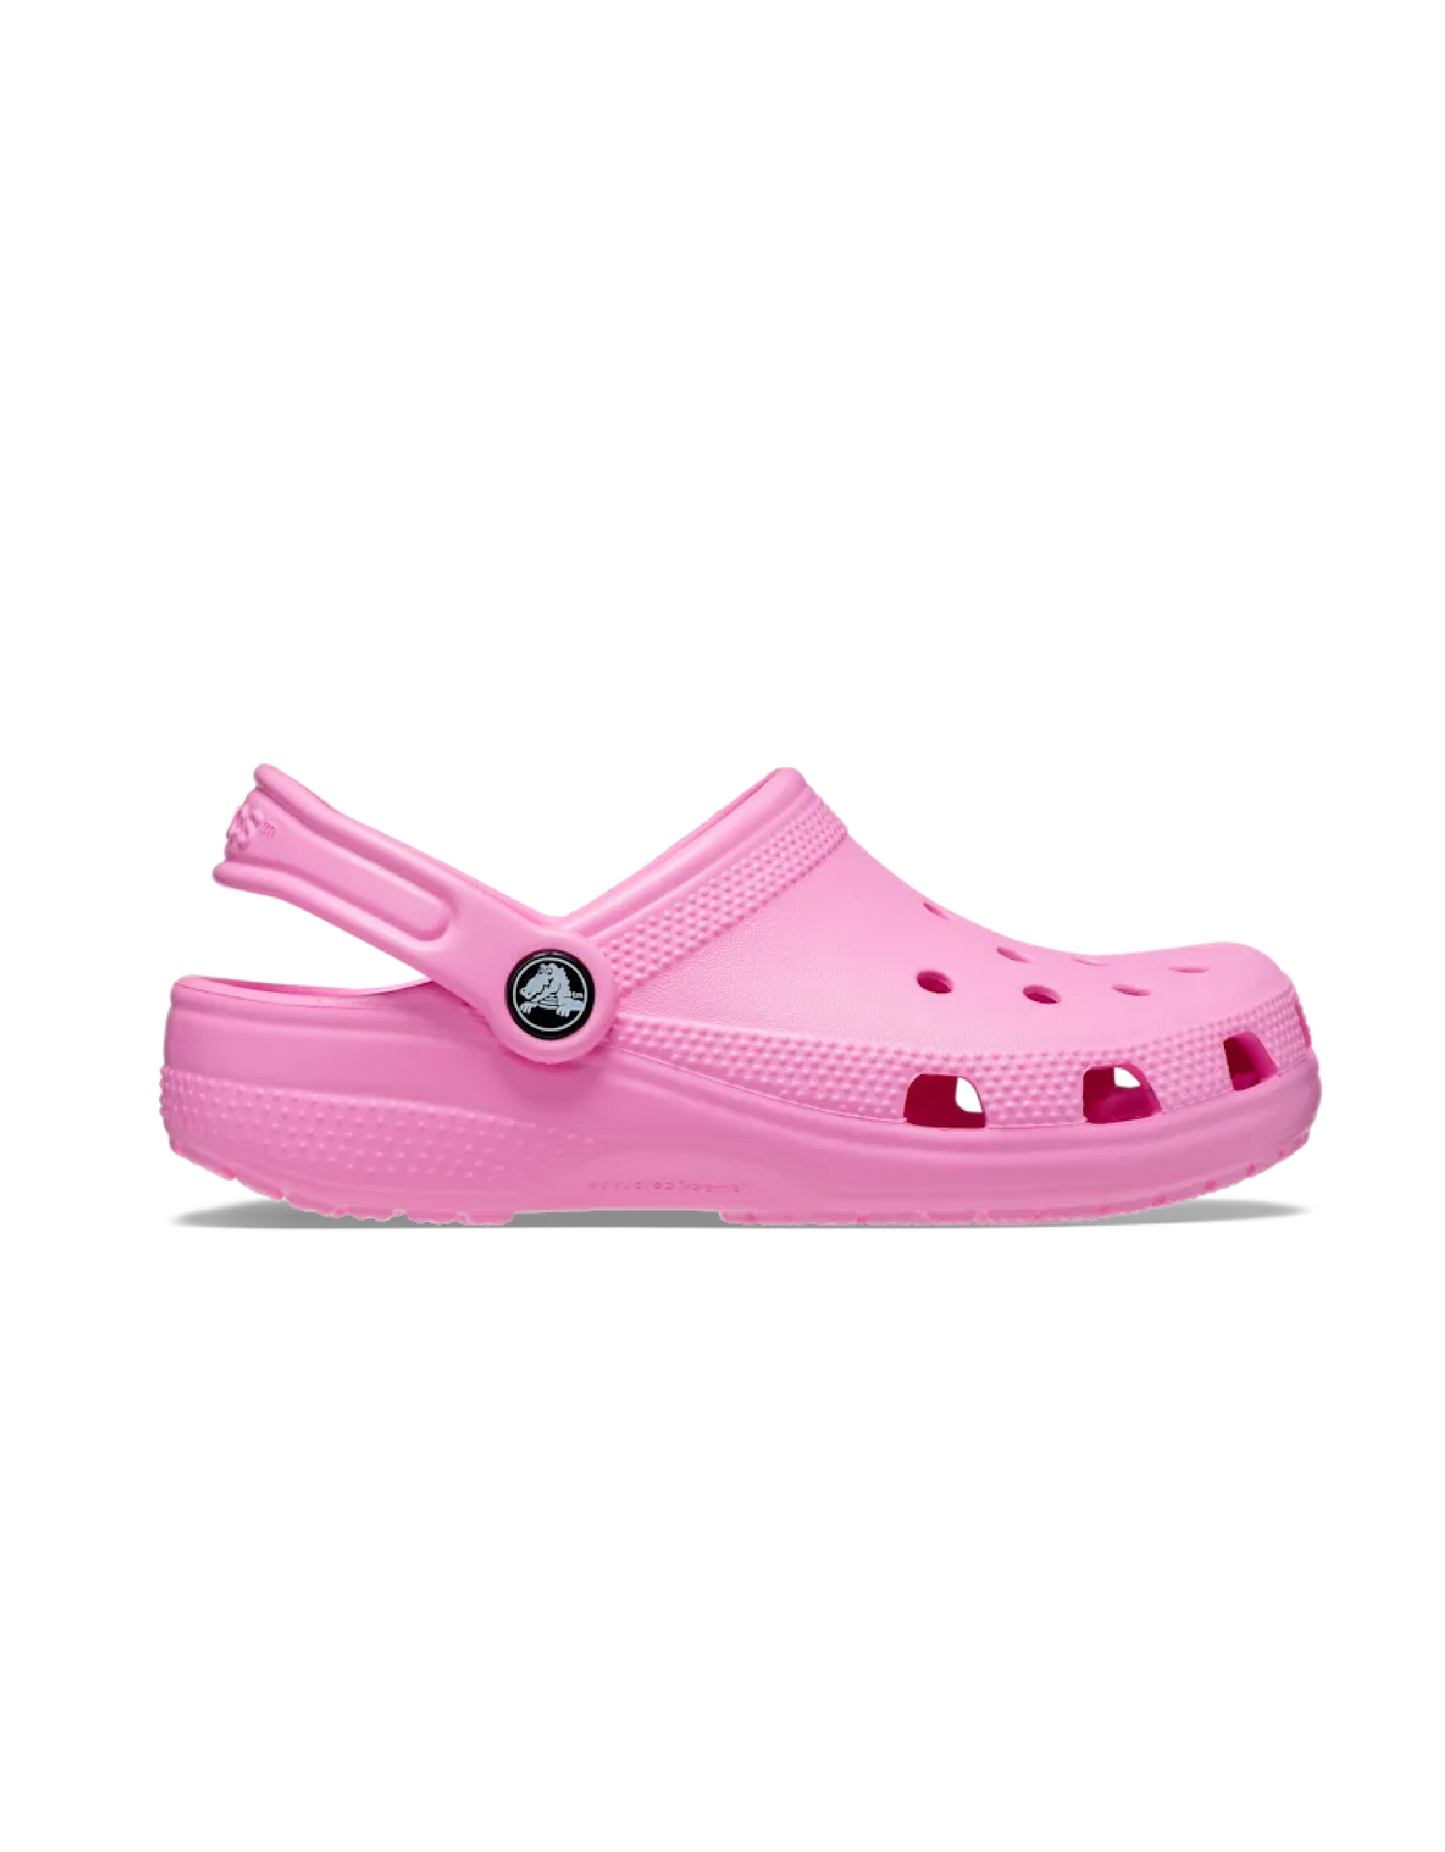 Crocs Classic Infant Taffy Pink